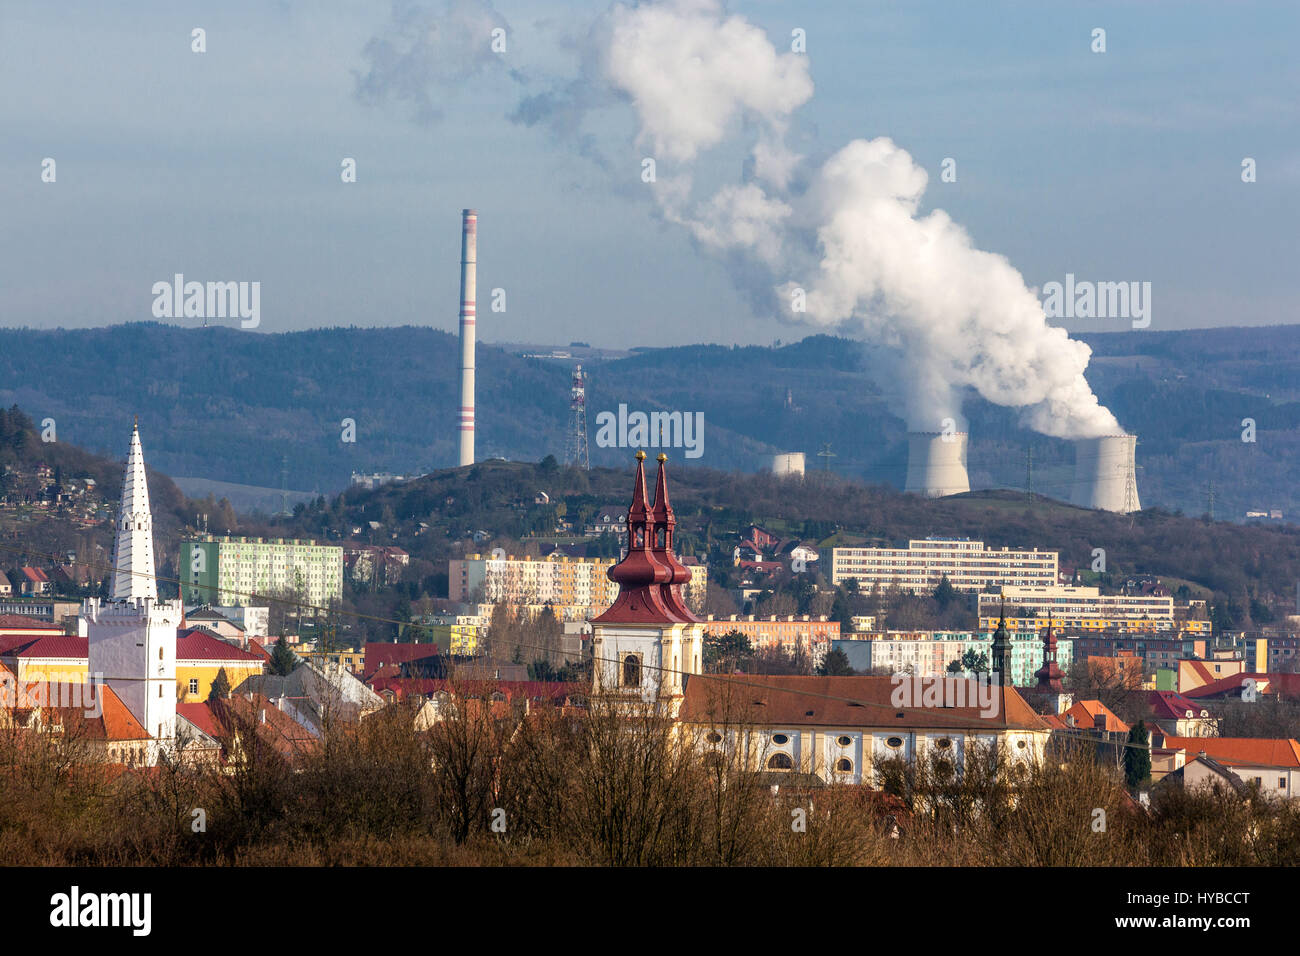 Panorama ville médiévale avec une centrale thermique de fond Prunerov, Kadan, cheminée fumée République tchèque émissions d'énergie pollution atmosphérique européenne Banque D'Images